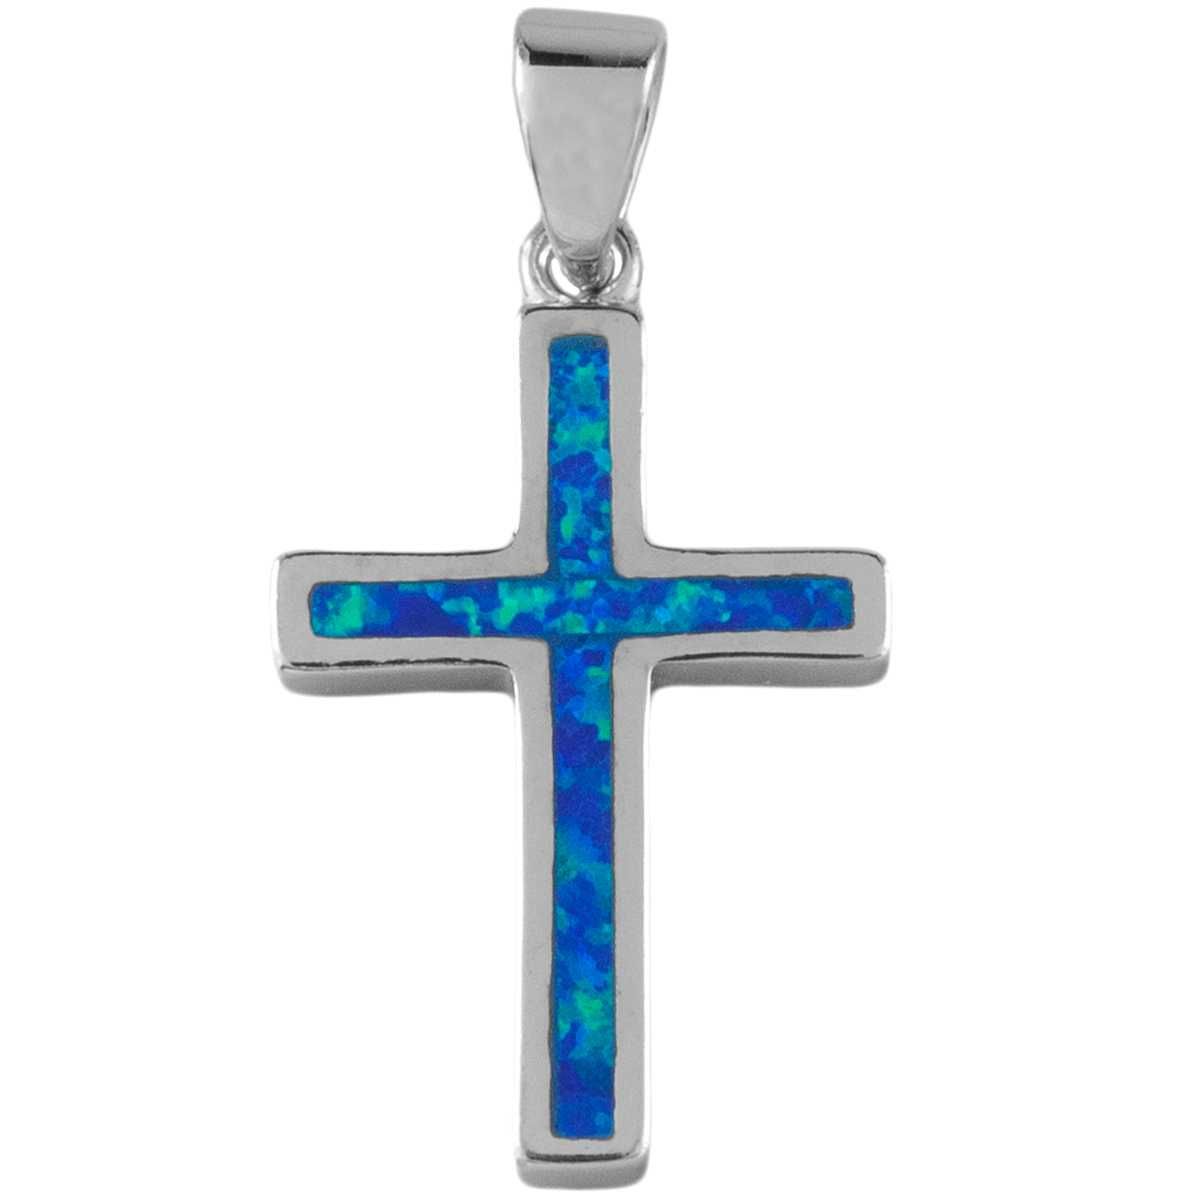 VERSIL wisior wisiorek opal niebieski krzyż krzyżyk SREBRO 925